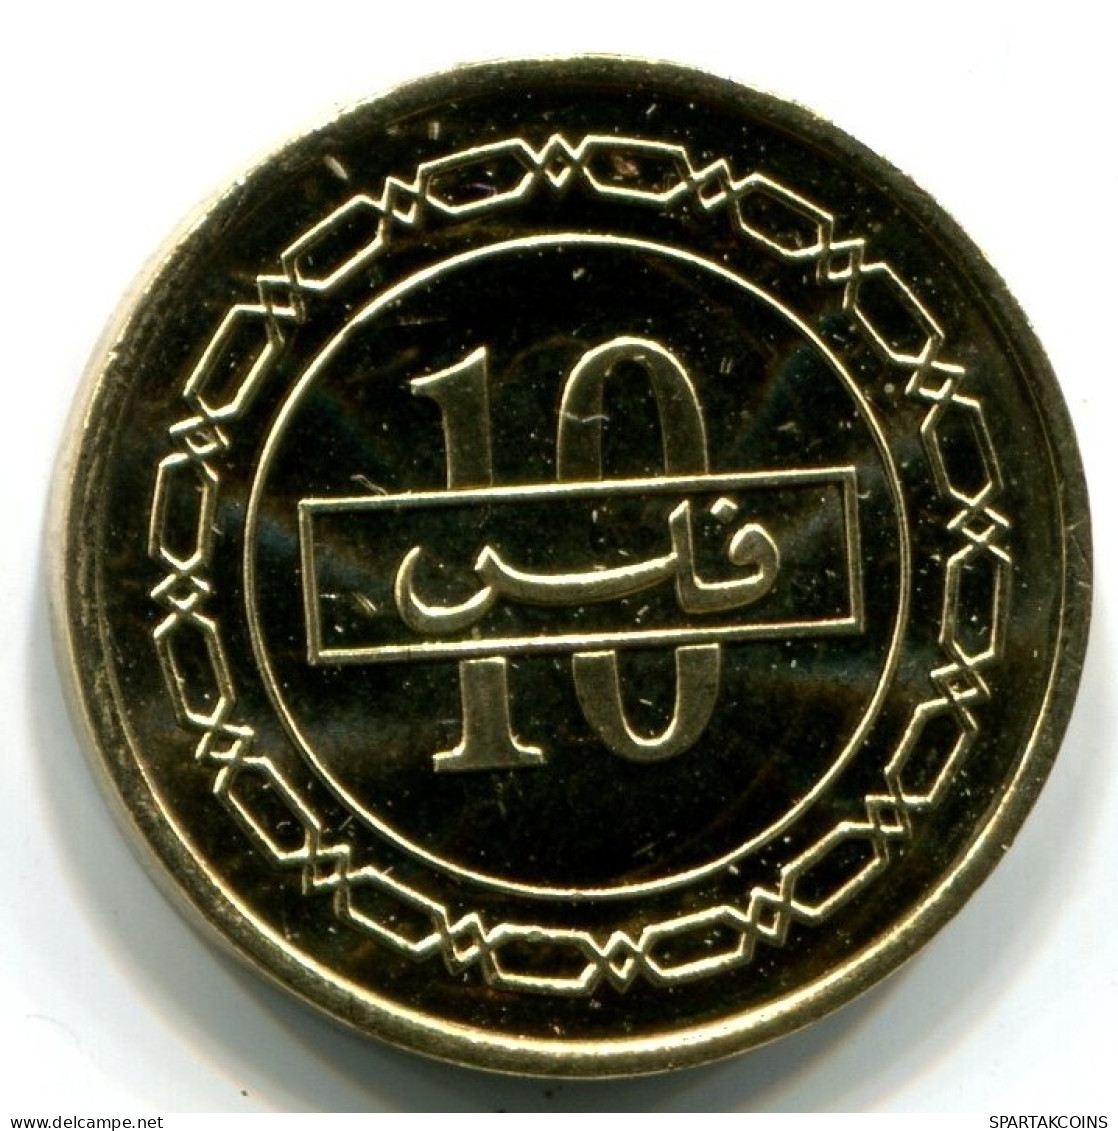 10 FILS 2000 BAHRAIN Islamic Coin UNC #W11318.U.A - Bahrein